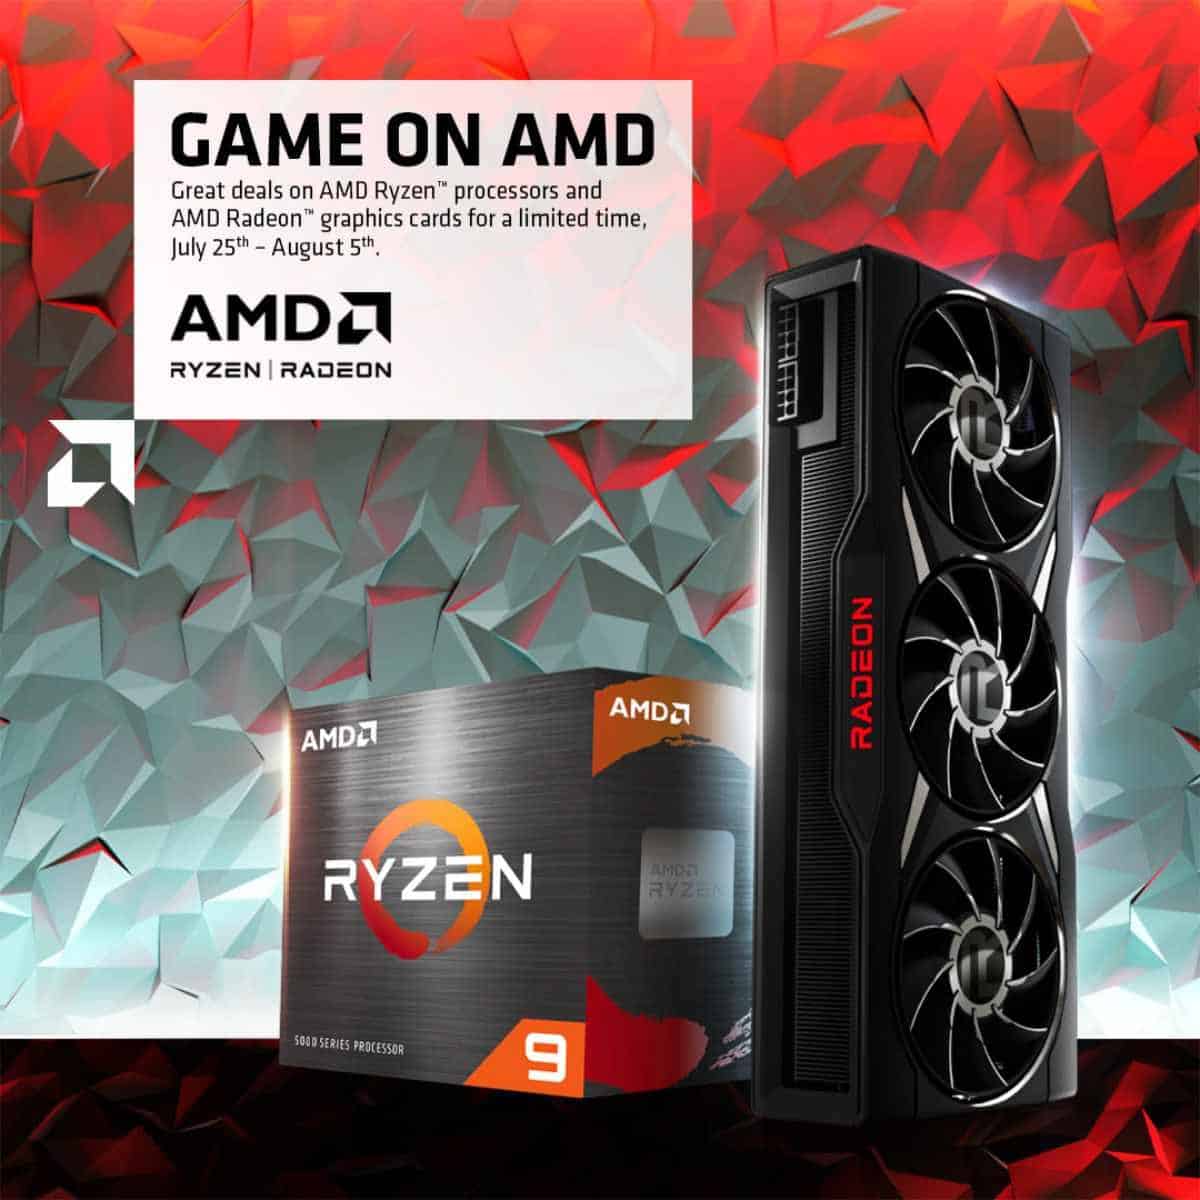 Game on AMD promotion UK